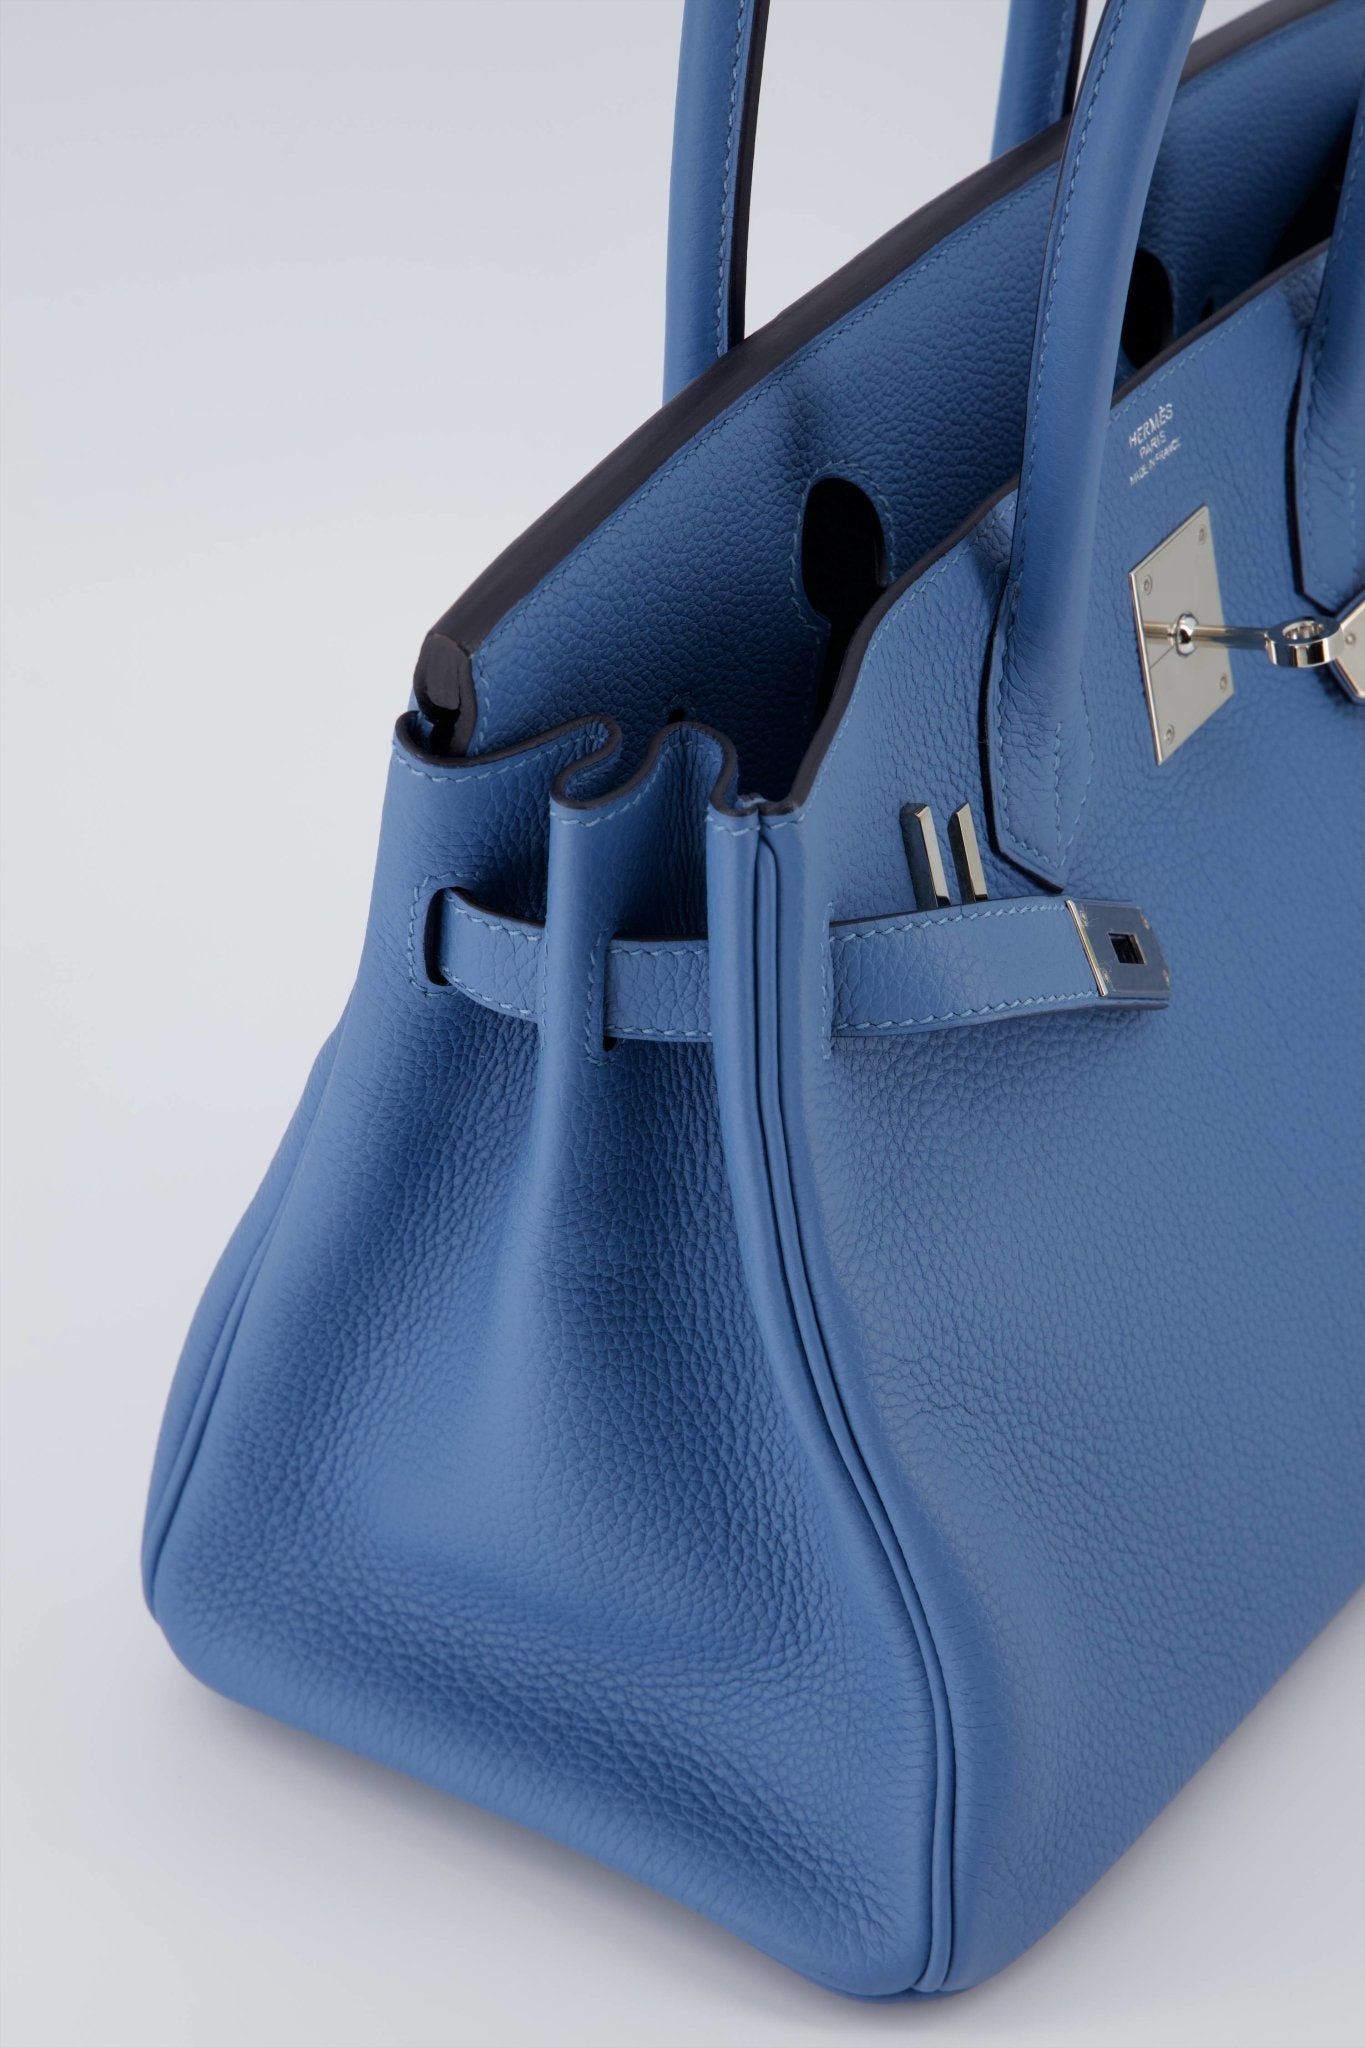 Hermes Birkin 30 Handbag Azur Togo Leather With Palladium Hardware